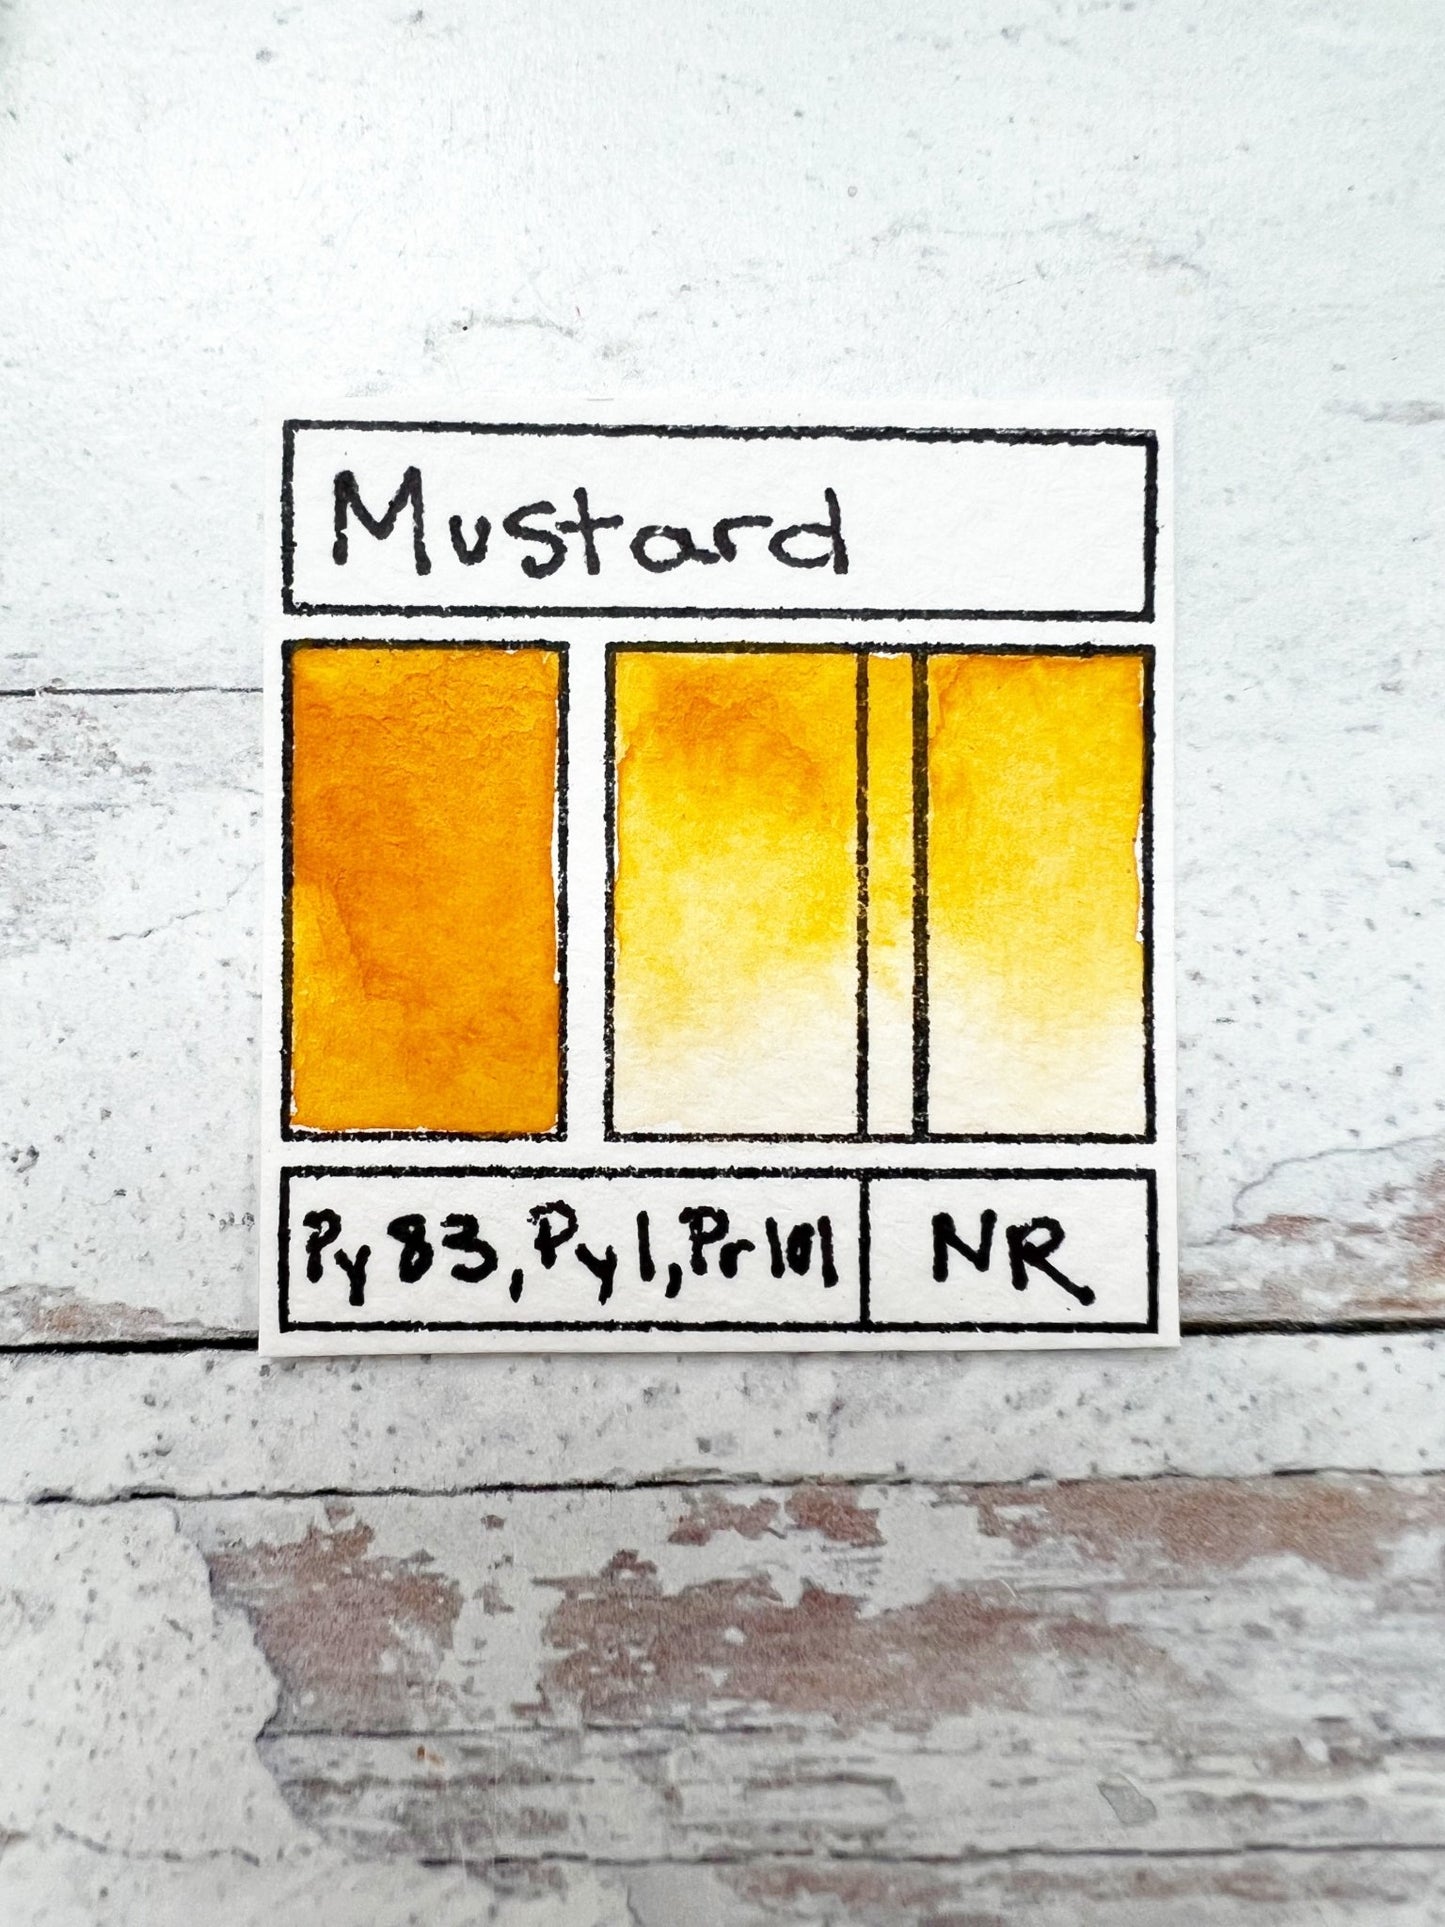 RM Mustard. Half pan, full pan or bottle cap of handmade watercolor paint